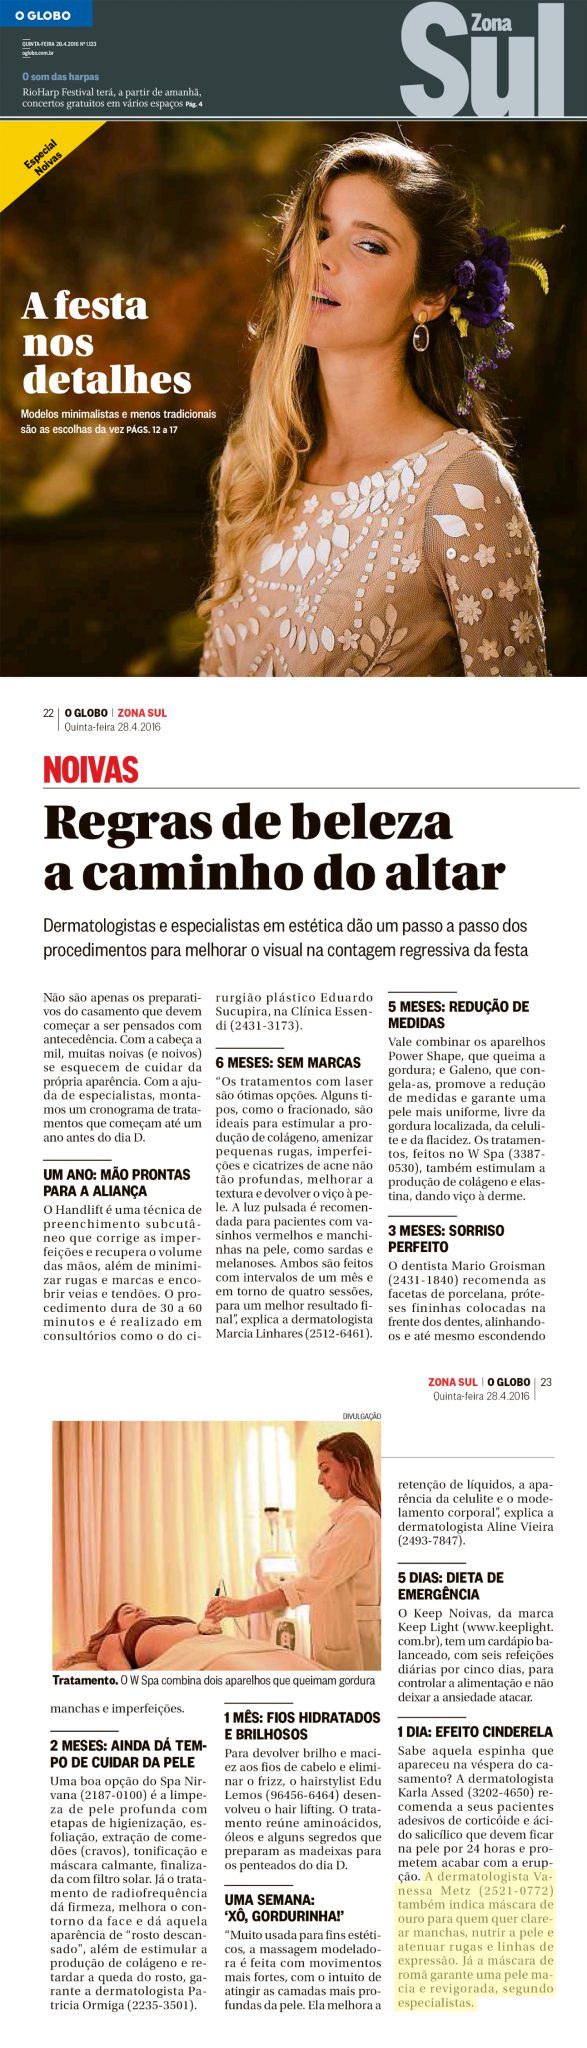 O Globo (28/04/2016)